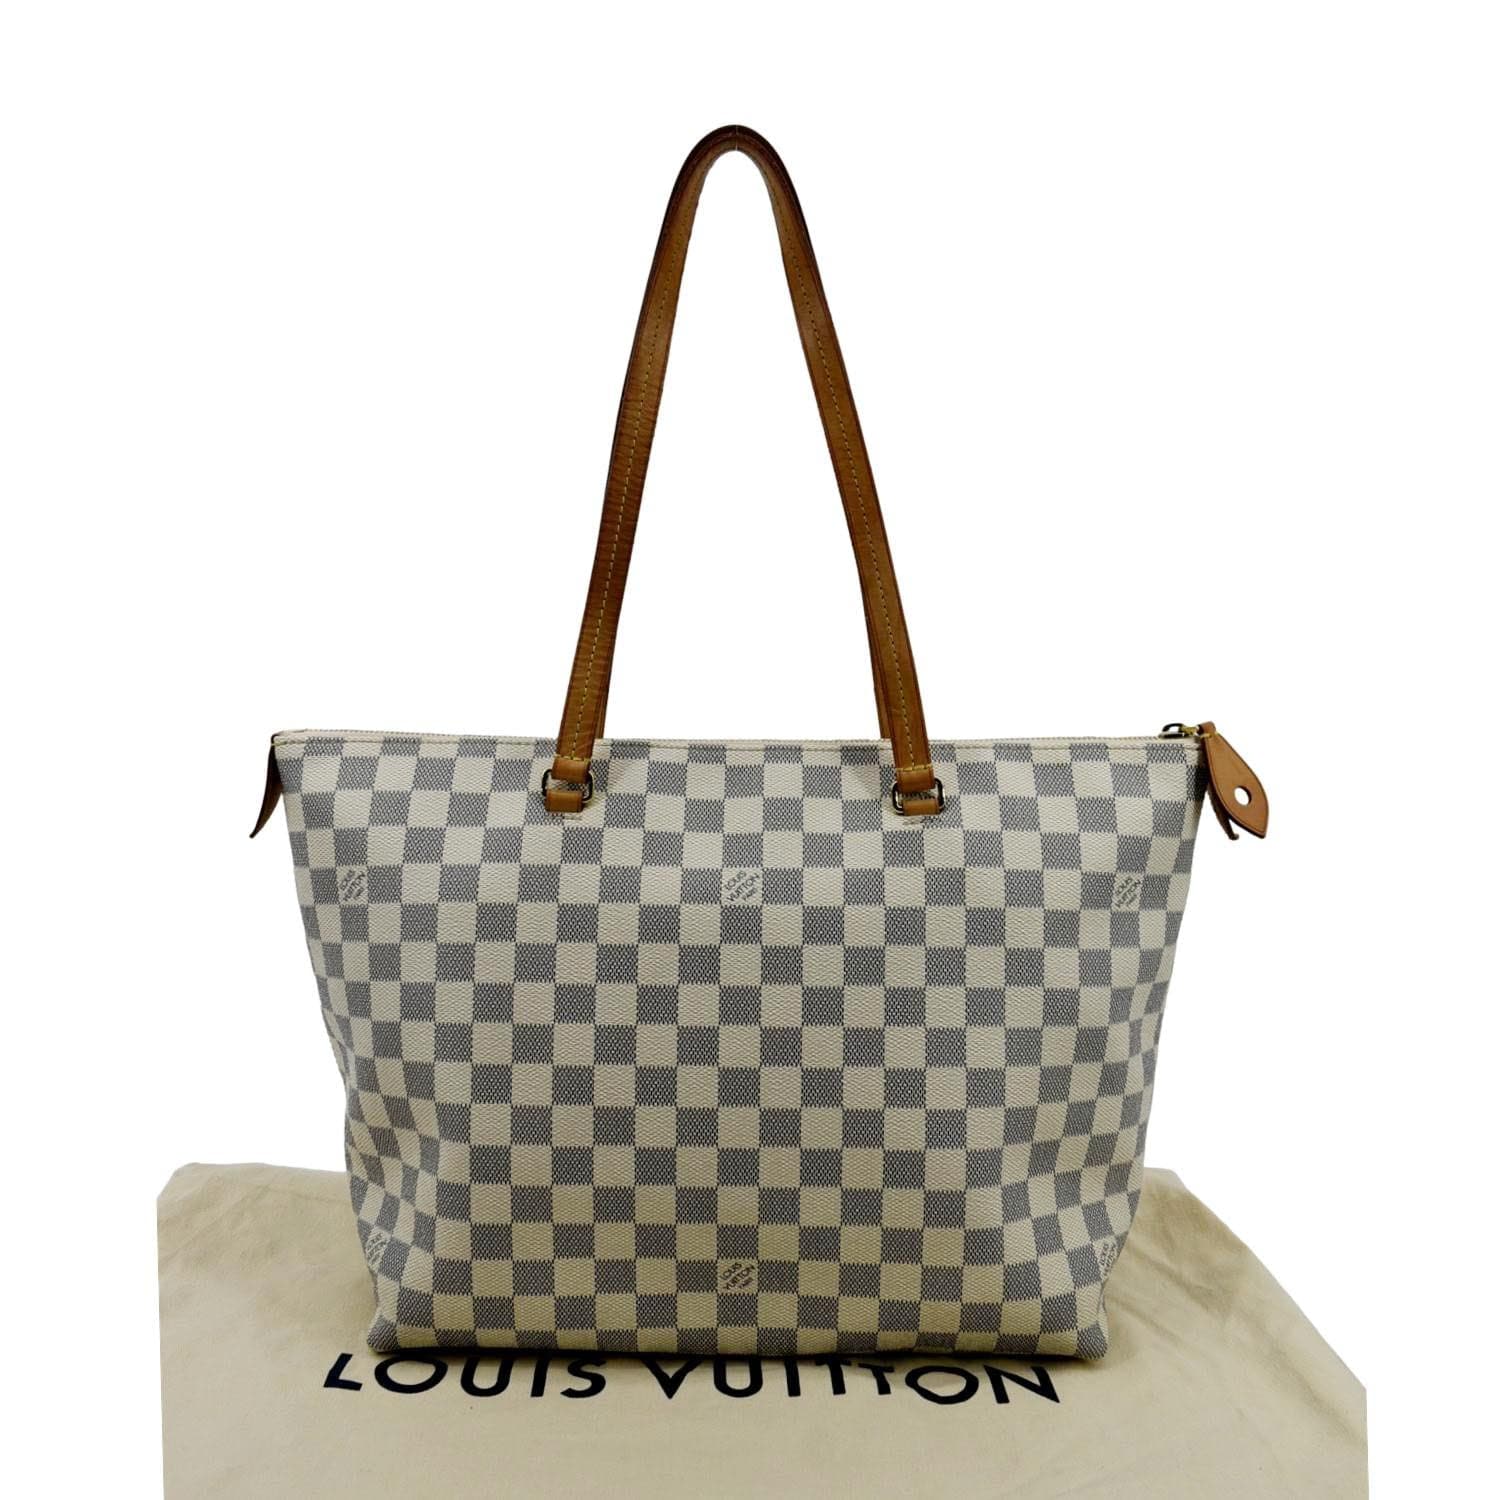 Louis Vuitton White Checkered Tote